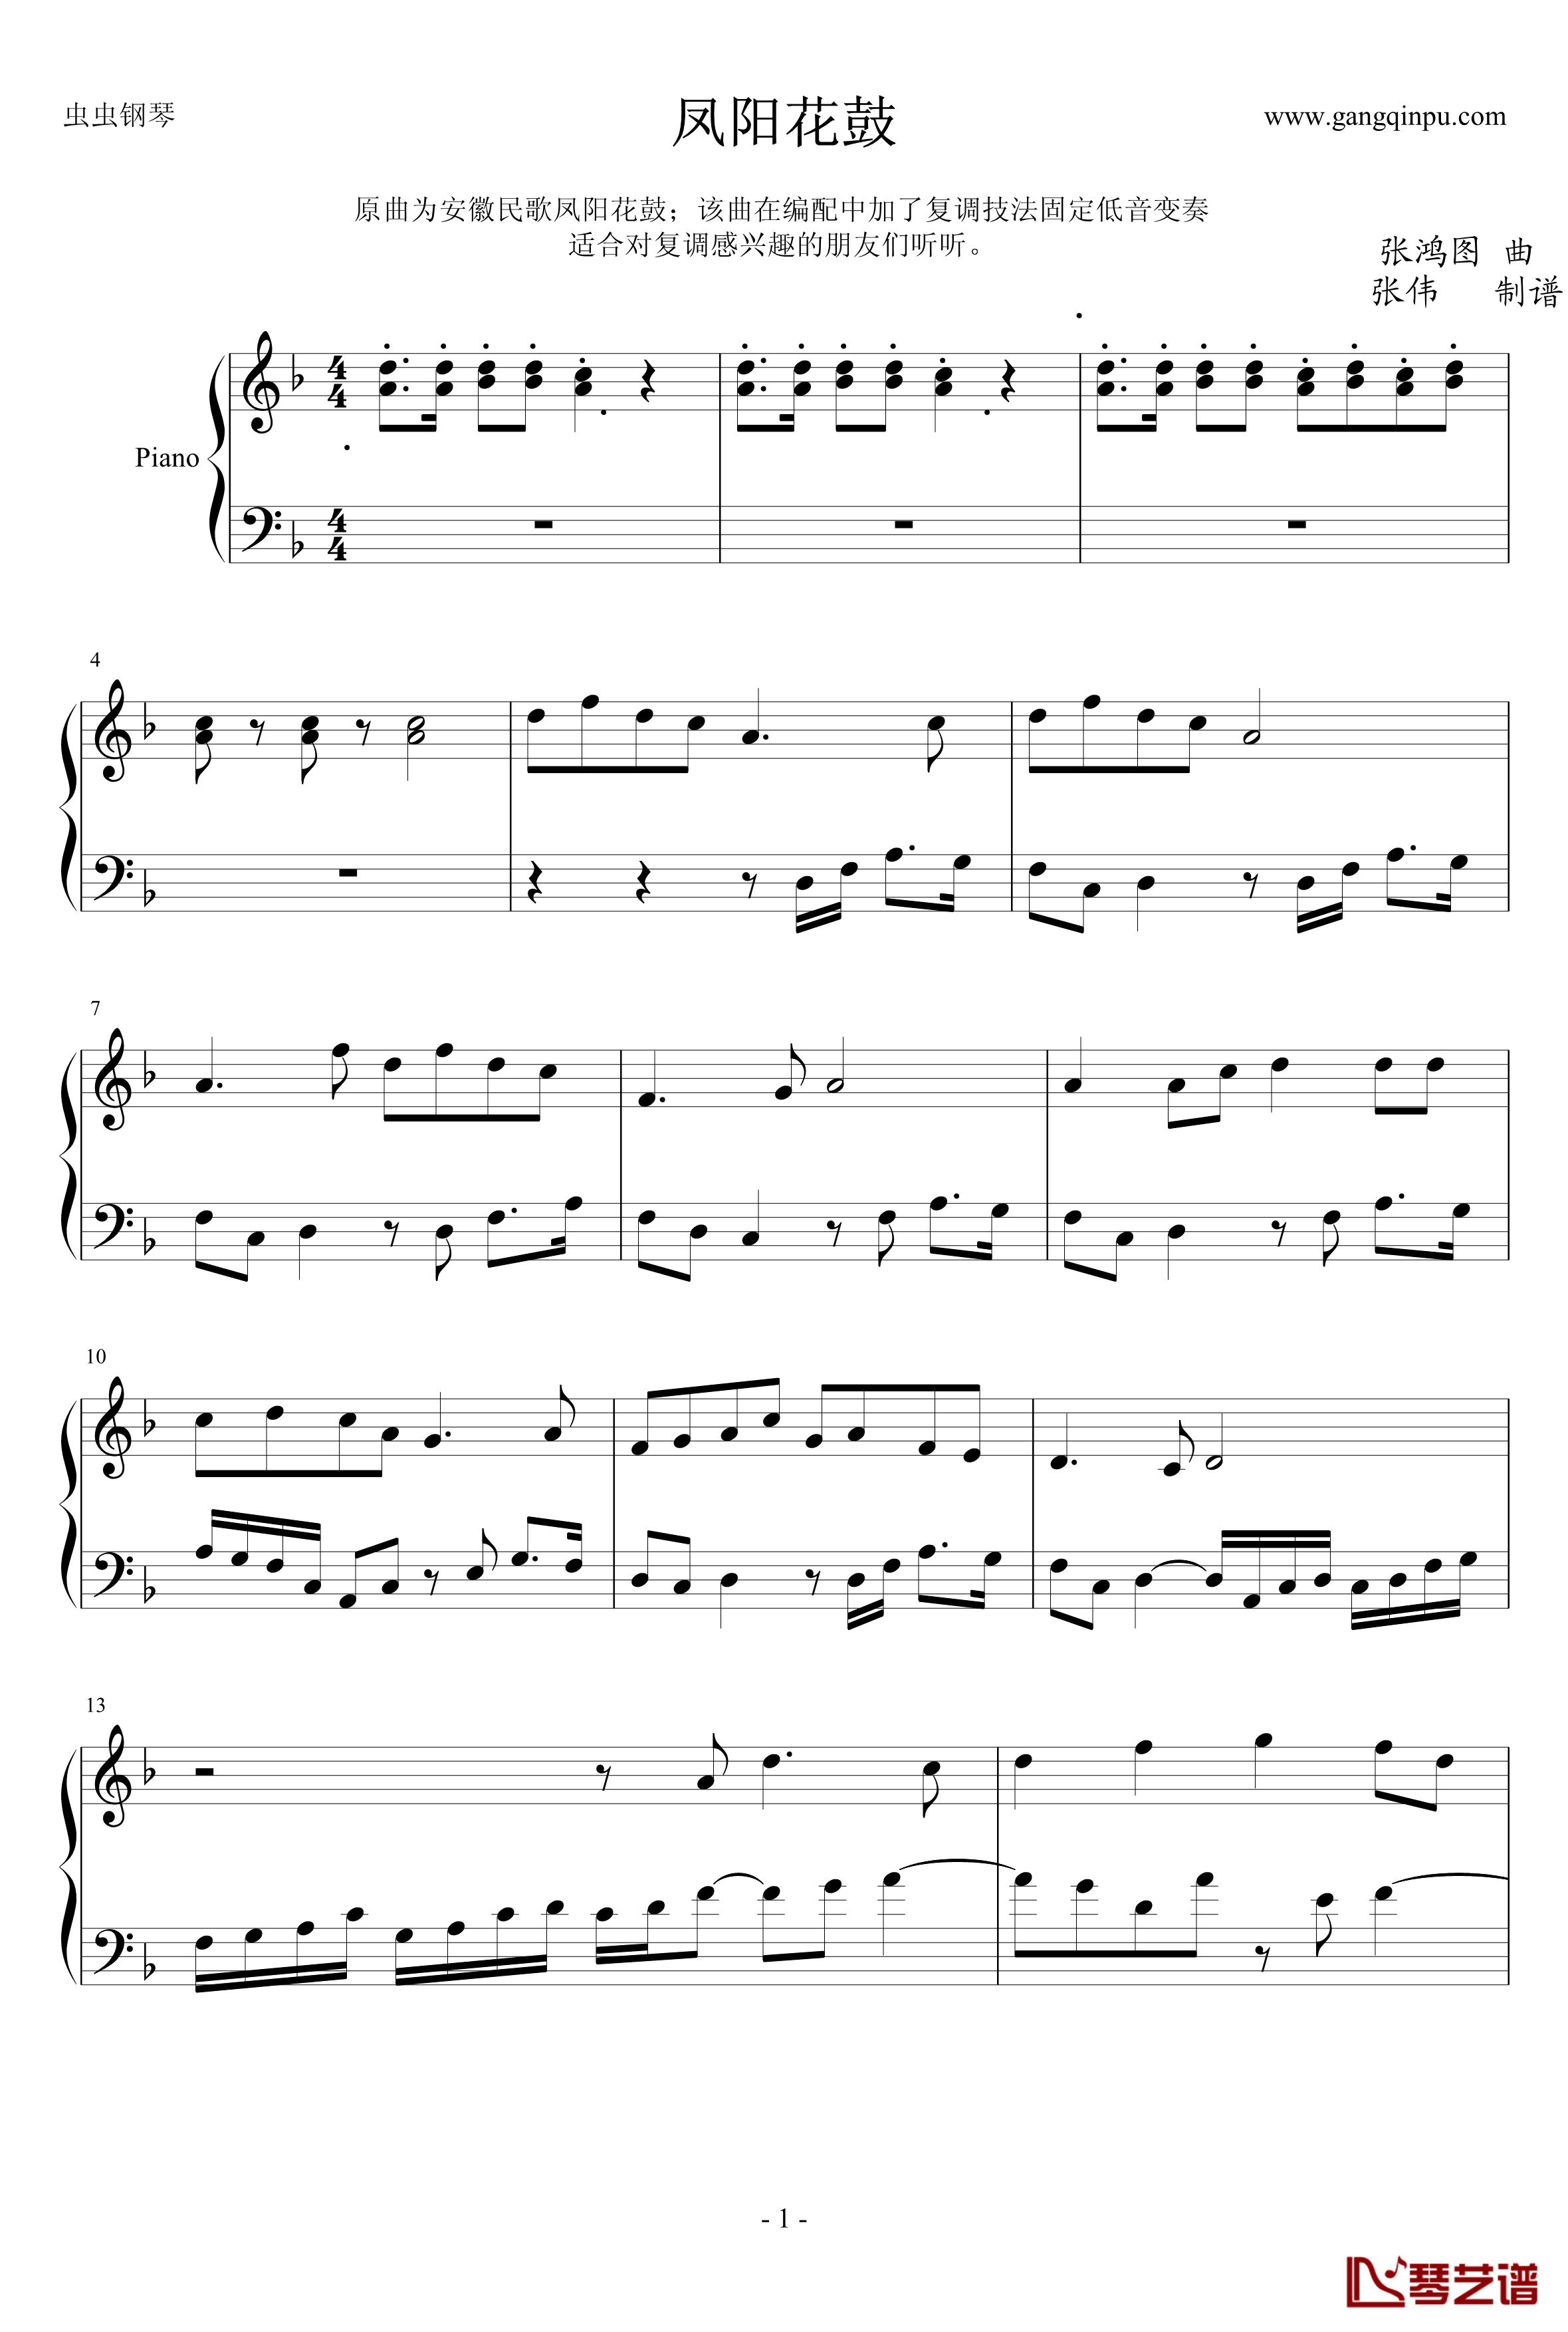 凤阳花鼓钢琴谱-张鸿图-固定低音变奏1